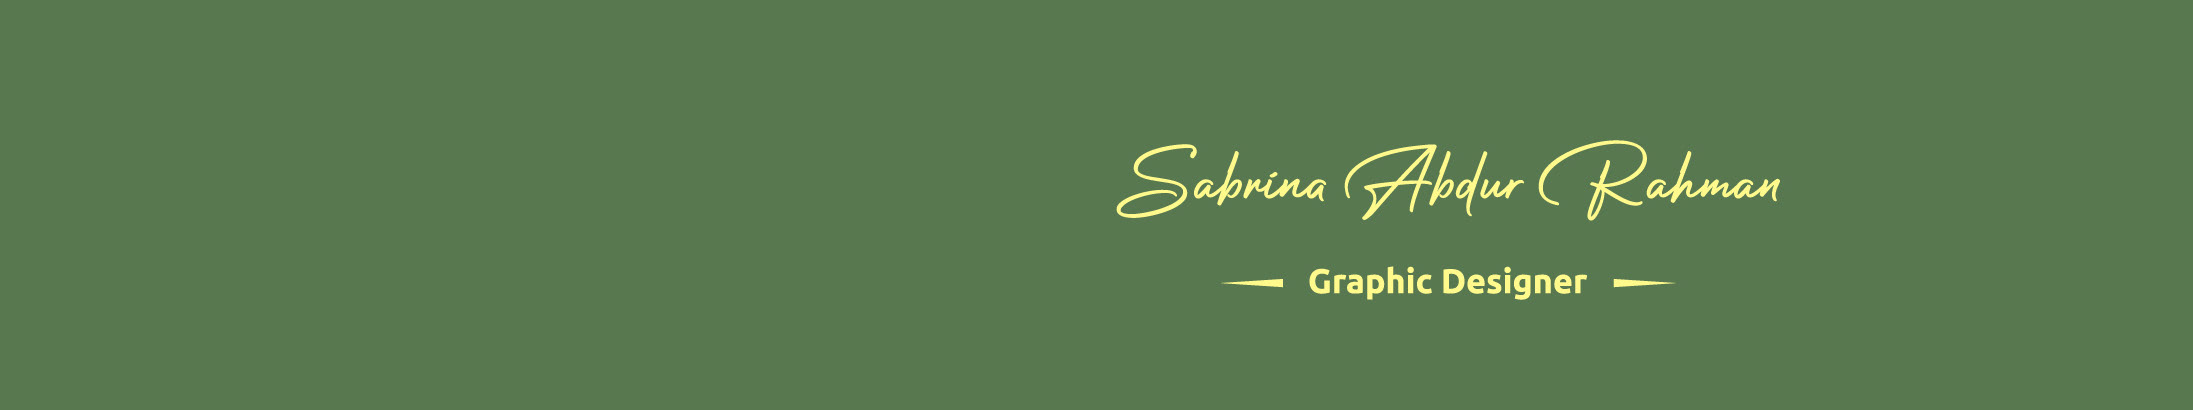 Profil-Banner von Sabrina Abdur Rahman